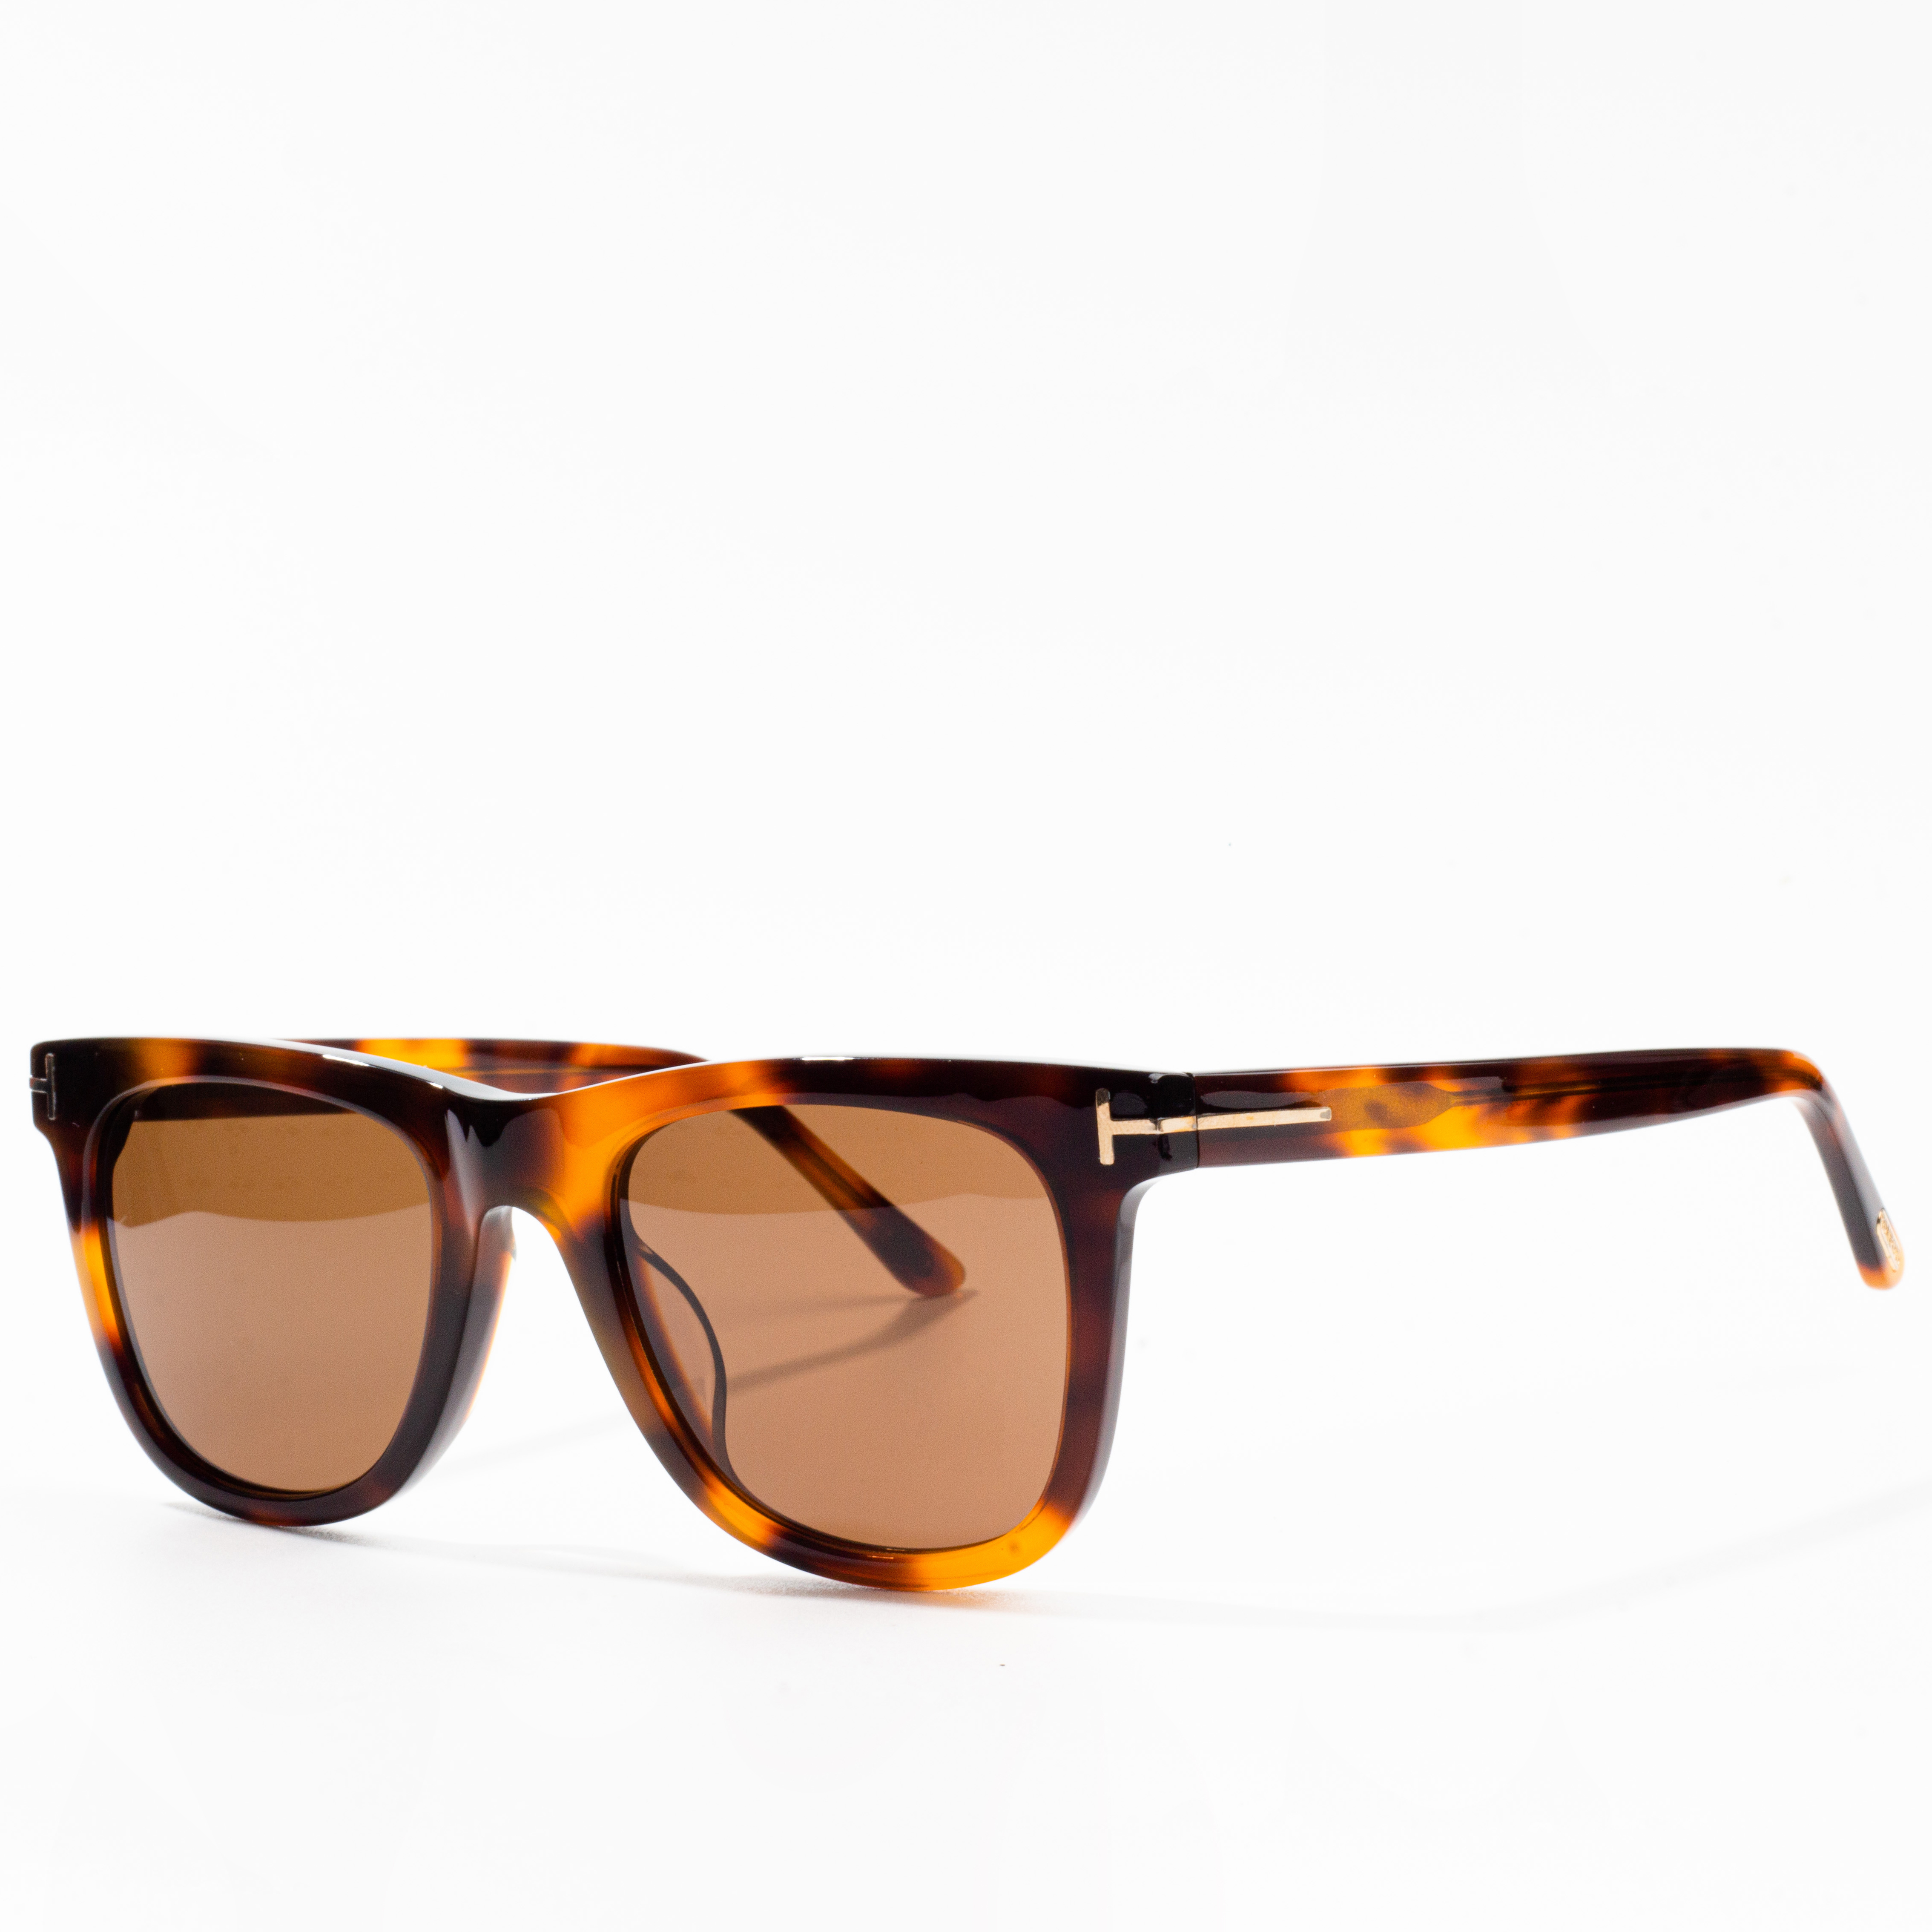 veleprodaja sunčanih naočala online